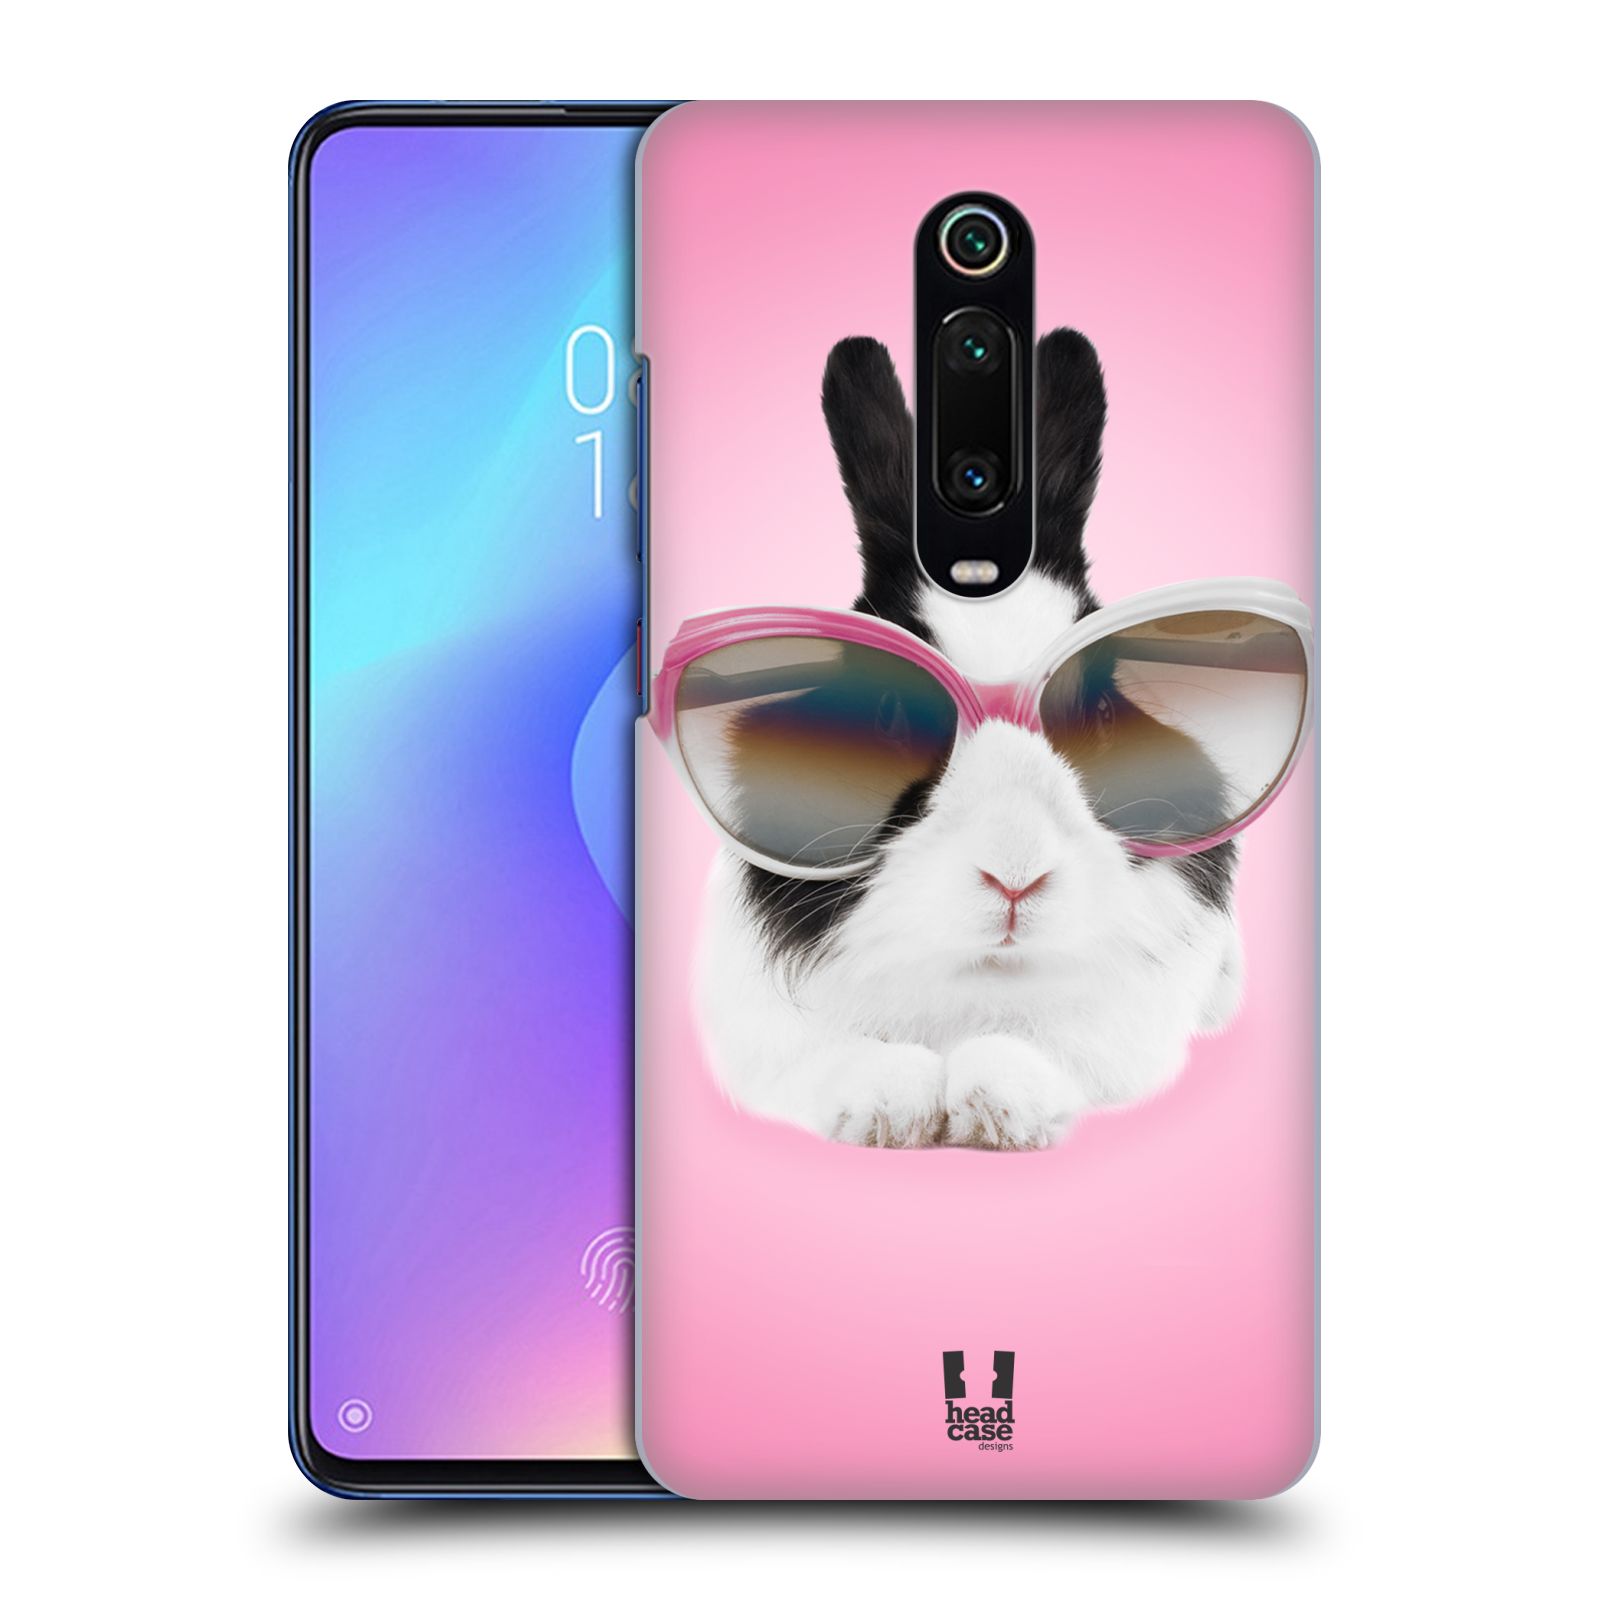 Plastový obal HEAD CASE na mobil Xiaomi Mi 9T vzor Legrační zvířátka roztomilý králíček s brýlemi růžová